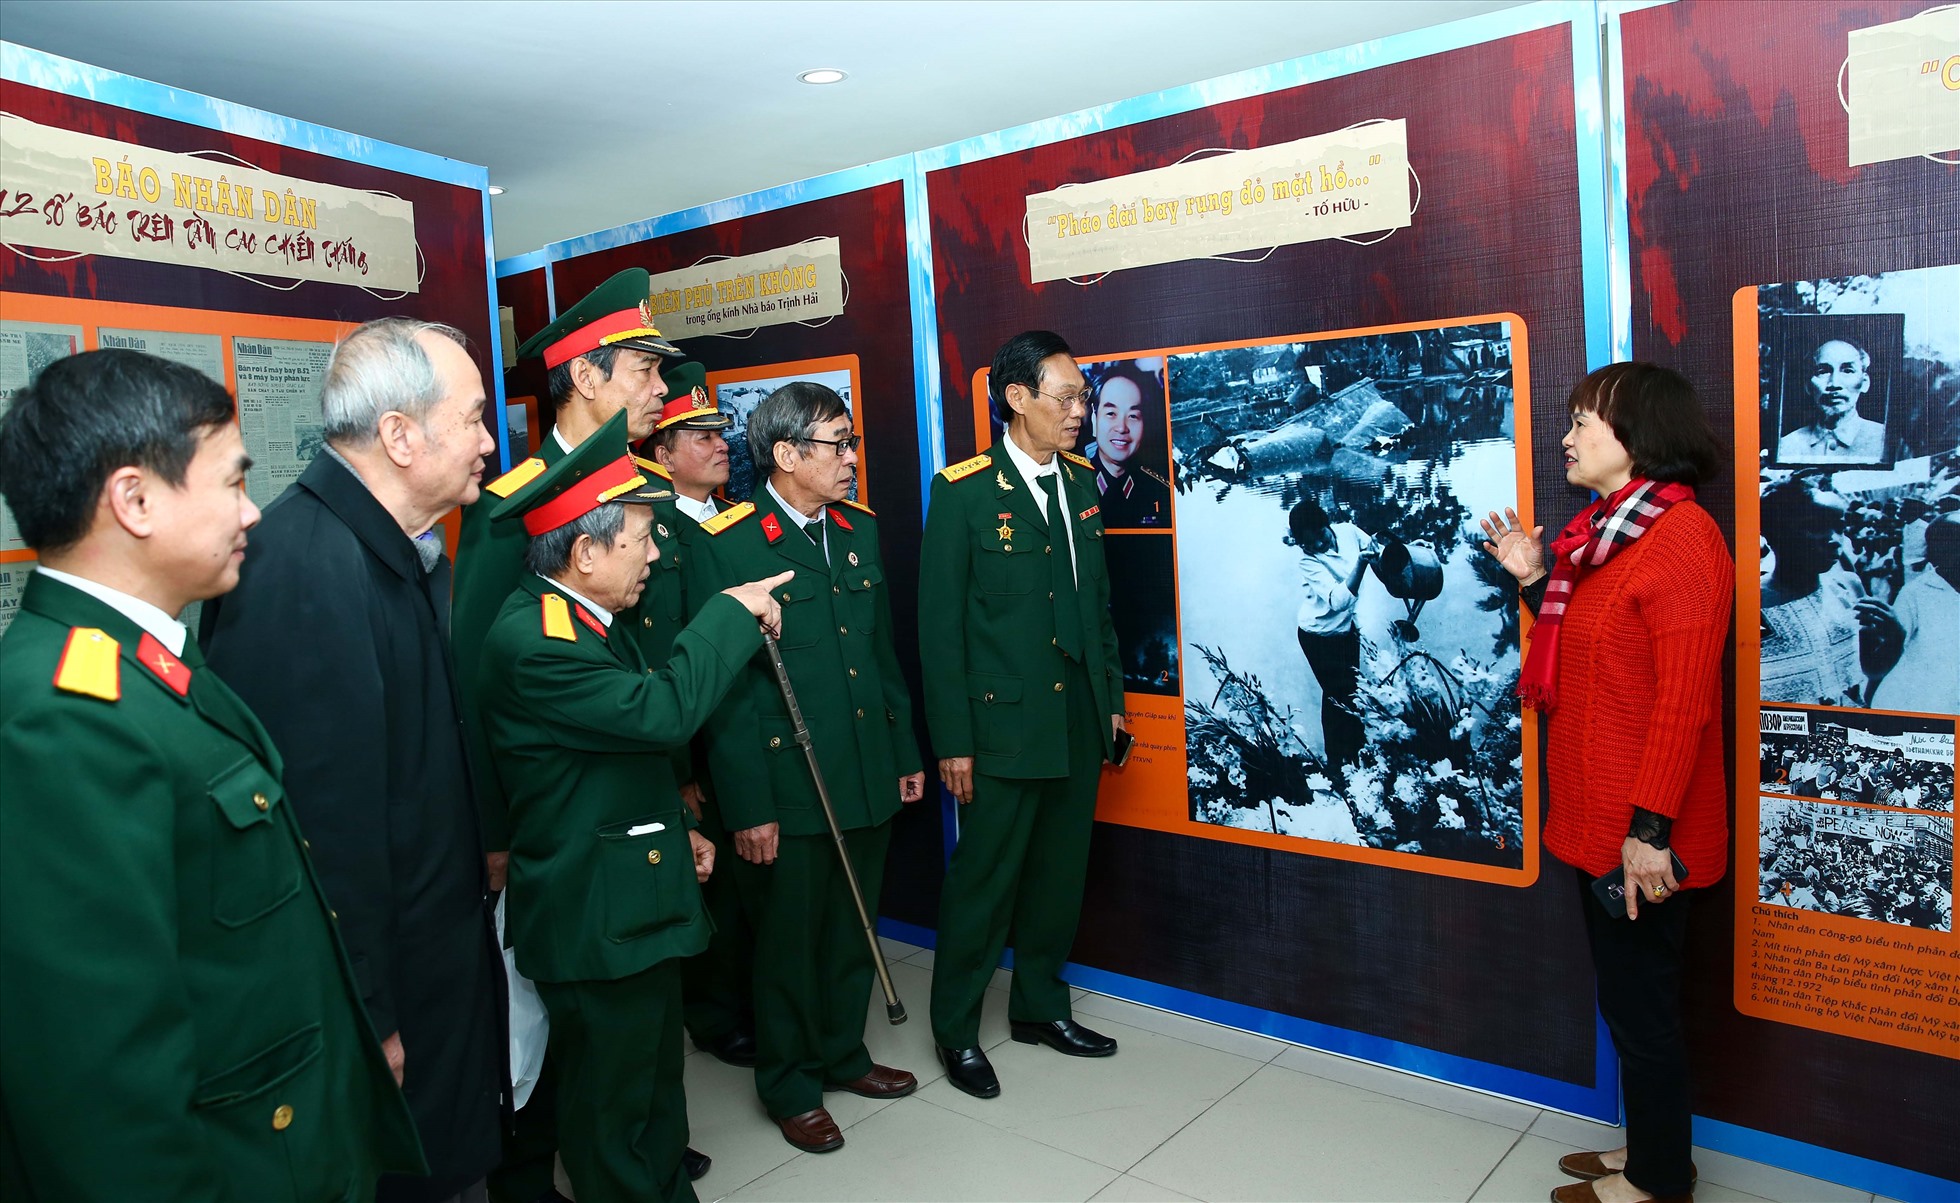 Cựu chiến binh Cơ quan Hội Nhà báo Việt Nam thăm gian trưng bày chuyên đề Báo chí xung trận “Hà Nội - Điện Biên Phủ trên không” tại Bảo tàng Báo chí Việt Nam. Ảnh: